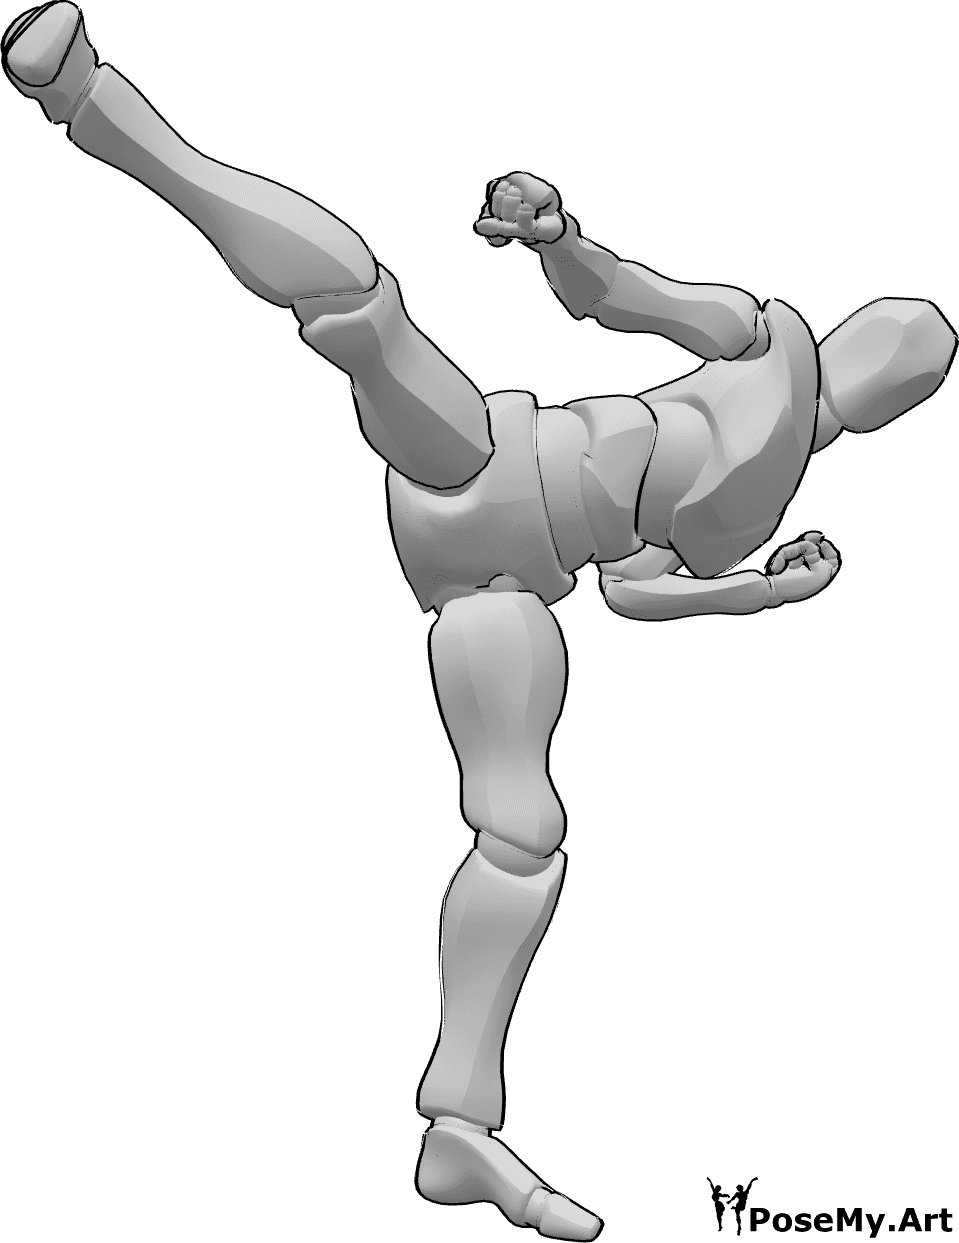 Posen-Referenz- Männliche Taekwondo-Kick-Pose - Männlicher Taekwondo Frontkick mit rechtem Bein in Pose